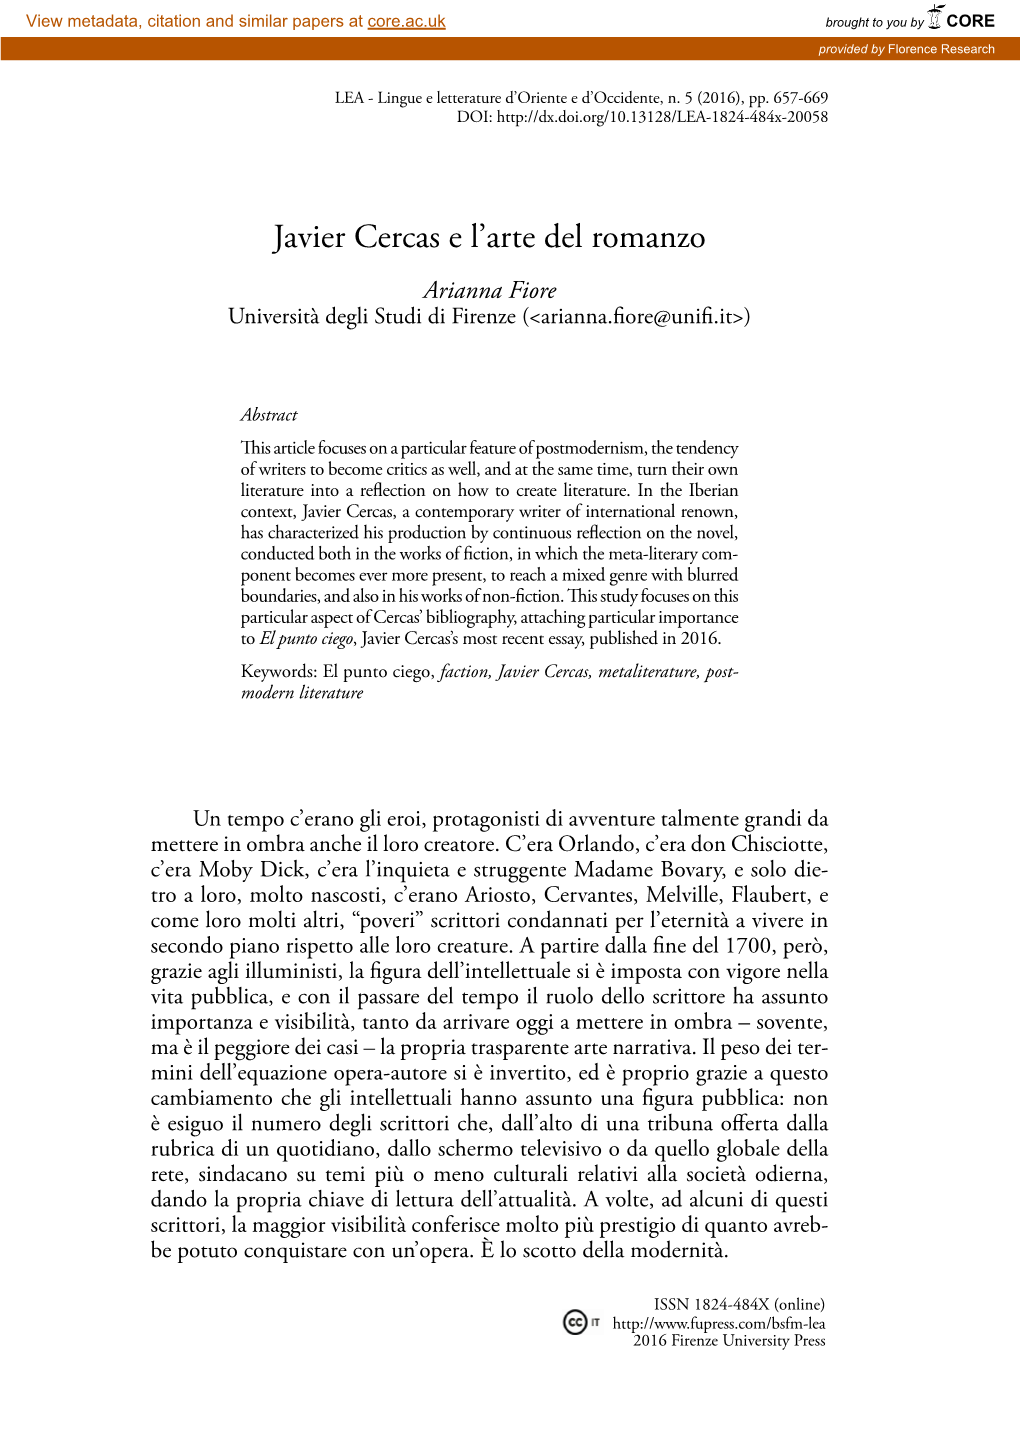 Javier Cercas E L'arte Del Romanzo 659 Diverse Latitudini E Il Ruolo Che Deve Avere Nella Società